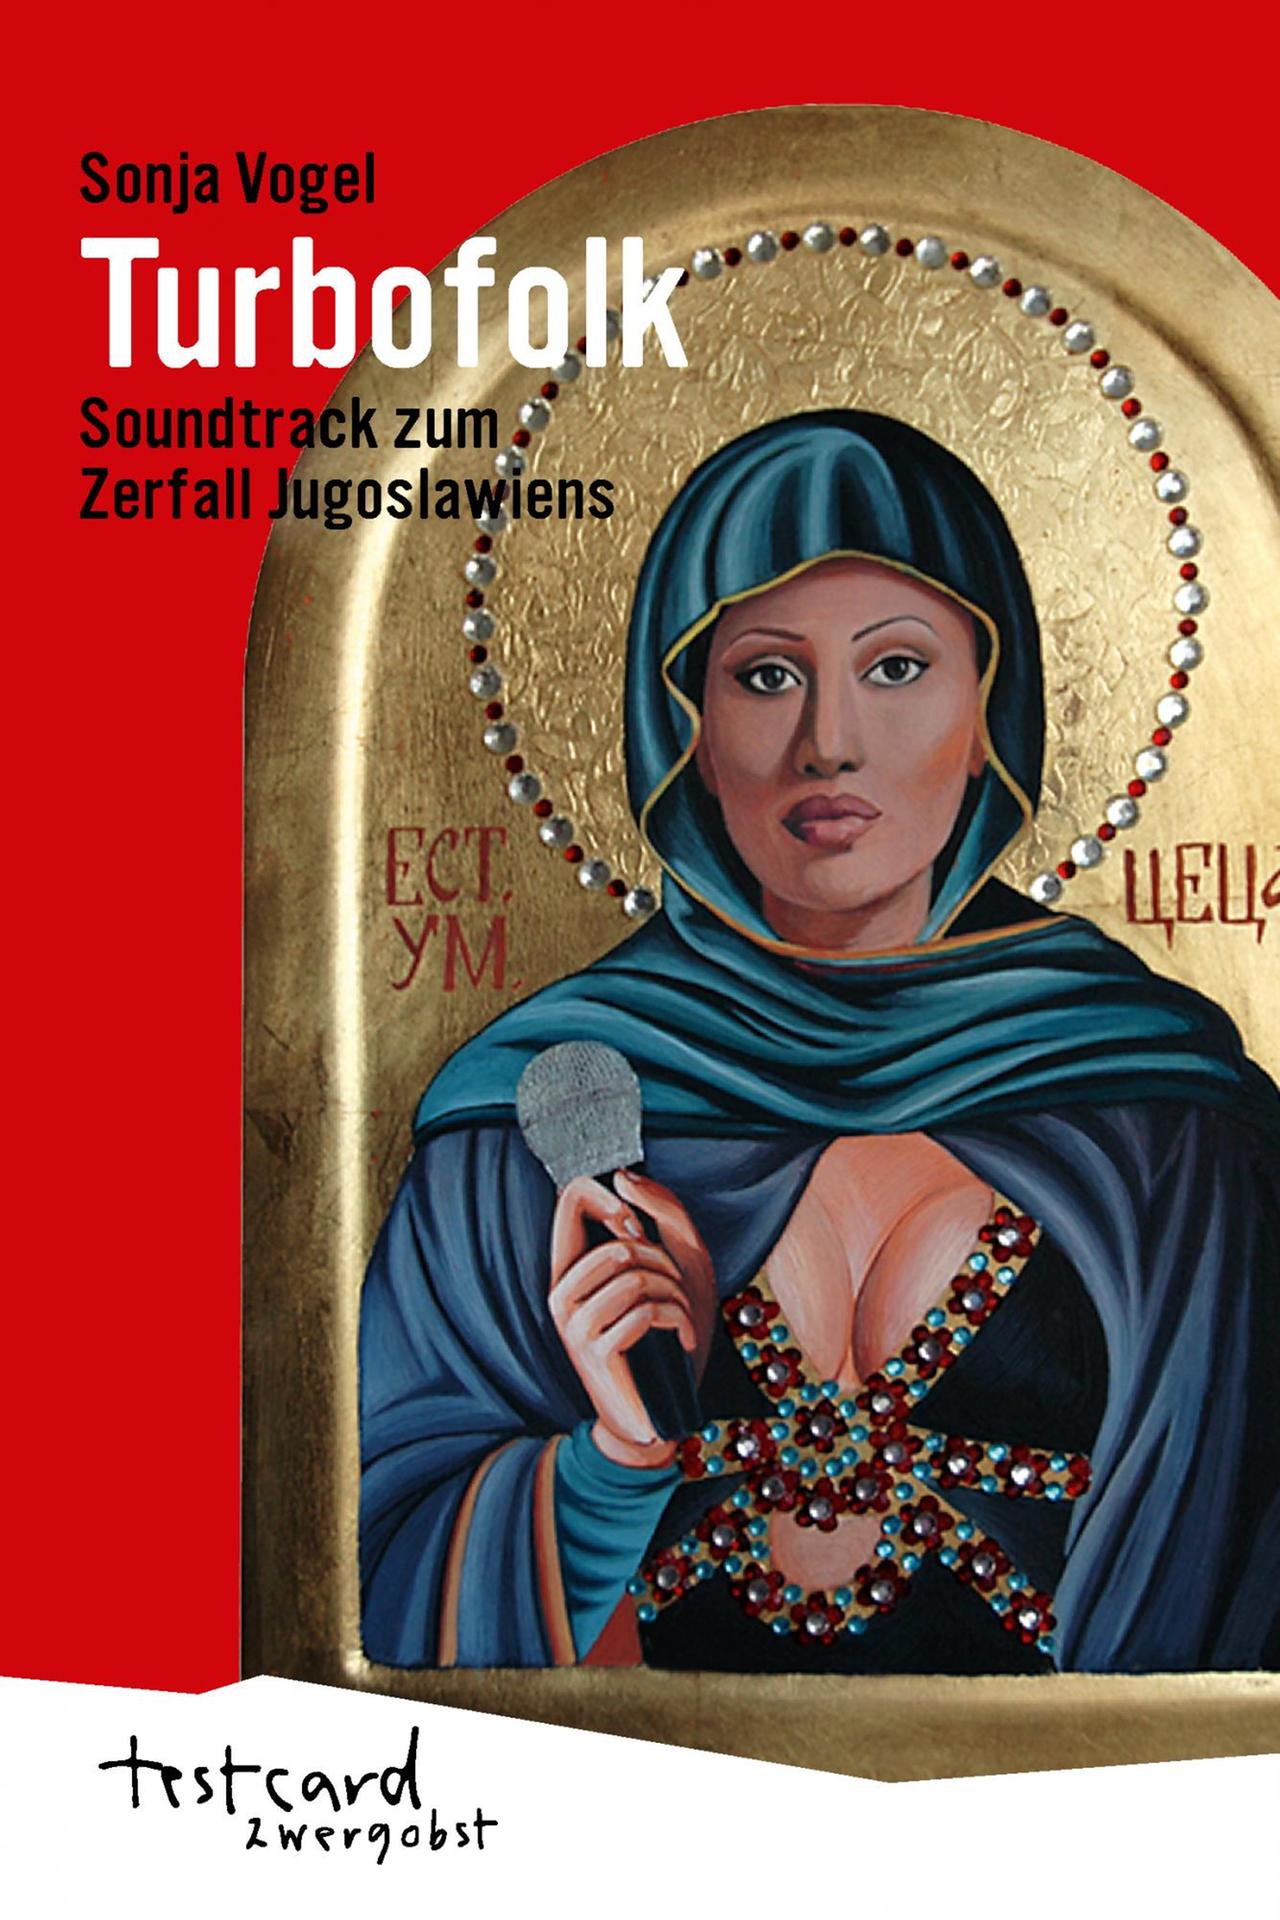 Cover des Buchs "Turbofolk" von Sonja Vogel